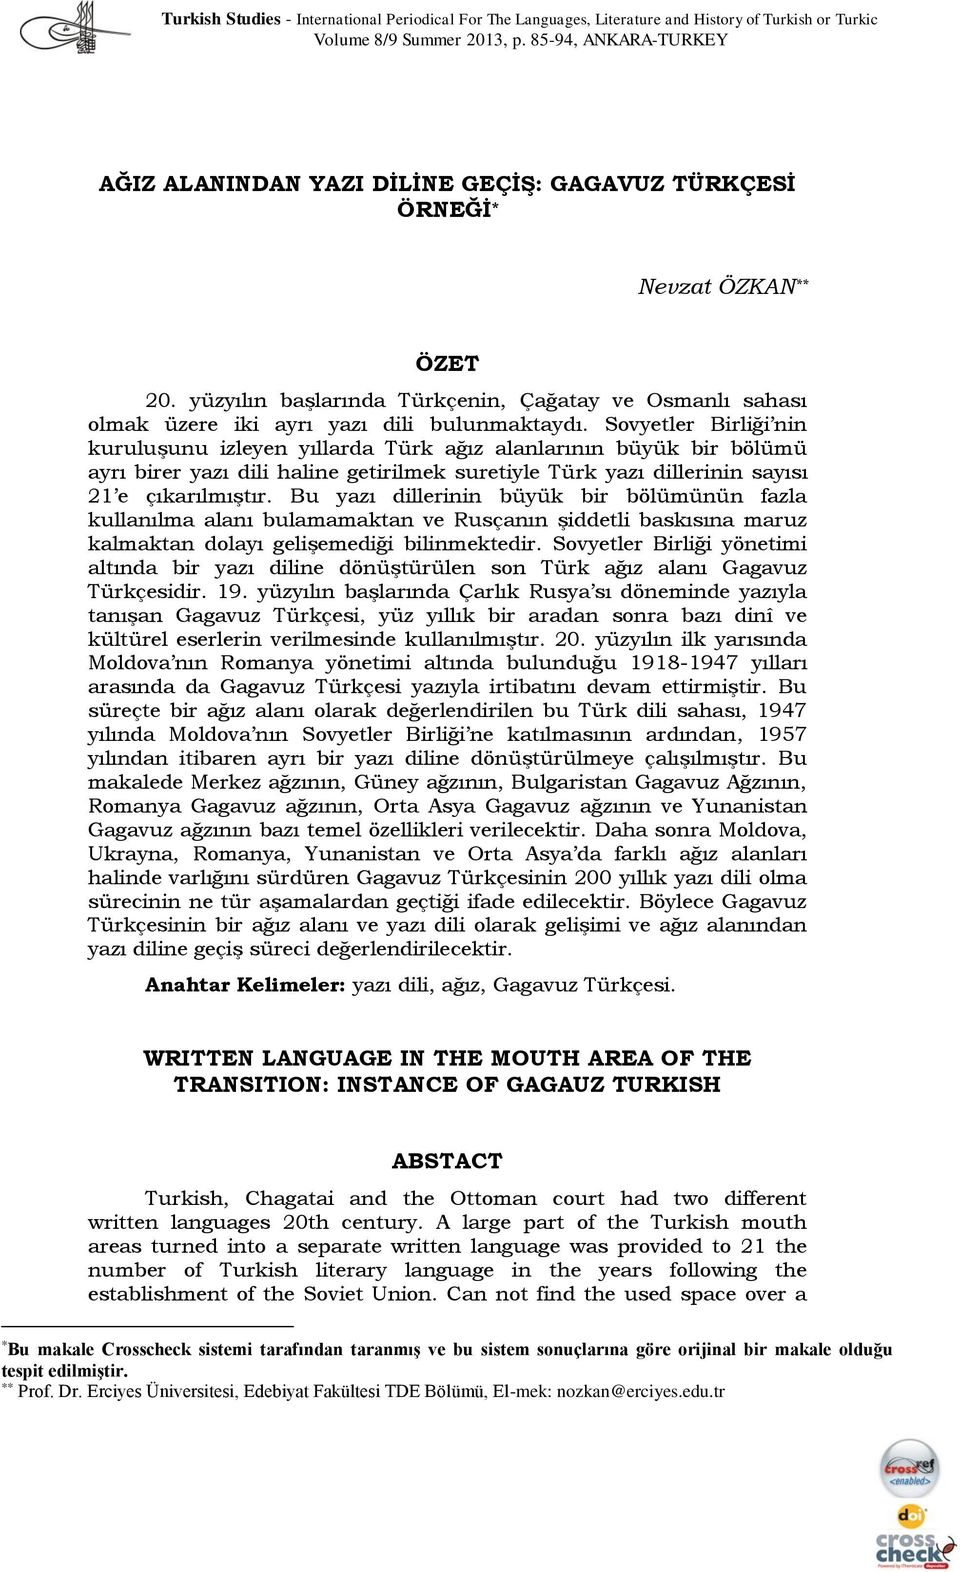 Sovyetler Birliği nin kuruluşunu izleyen yıllarda Türk ağız alanlarının büyük bir bölümü ayrı birer yazı dili haline getirilmek suretiyle Türk yazı dillerinin sayısı 21 e çıkarılmıştır.